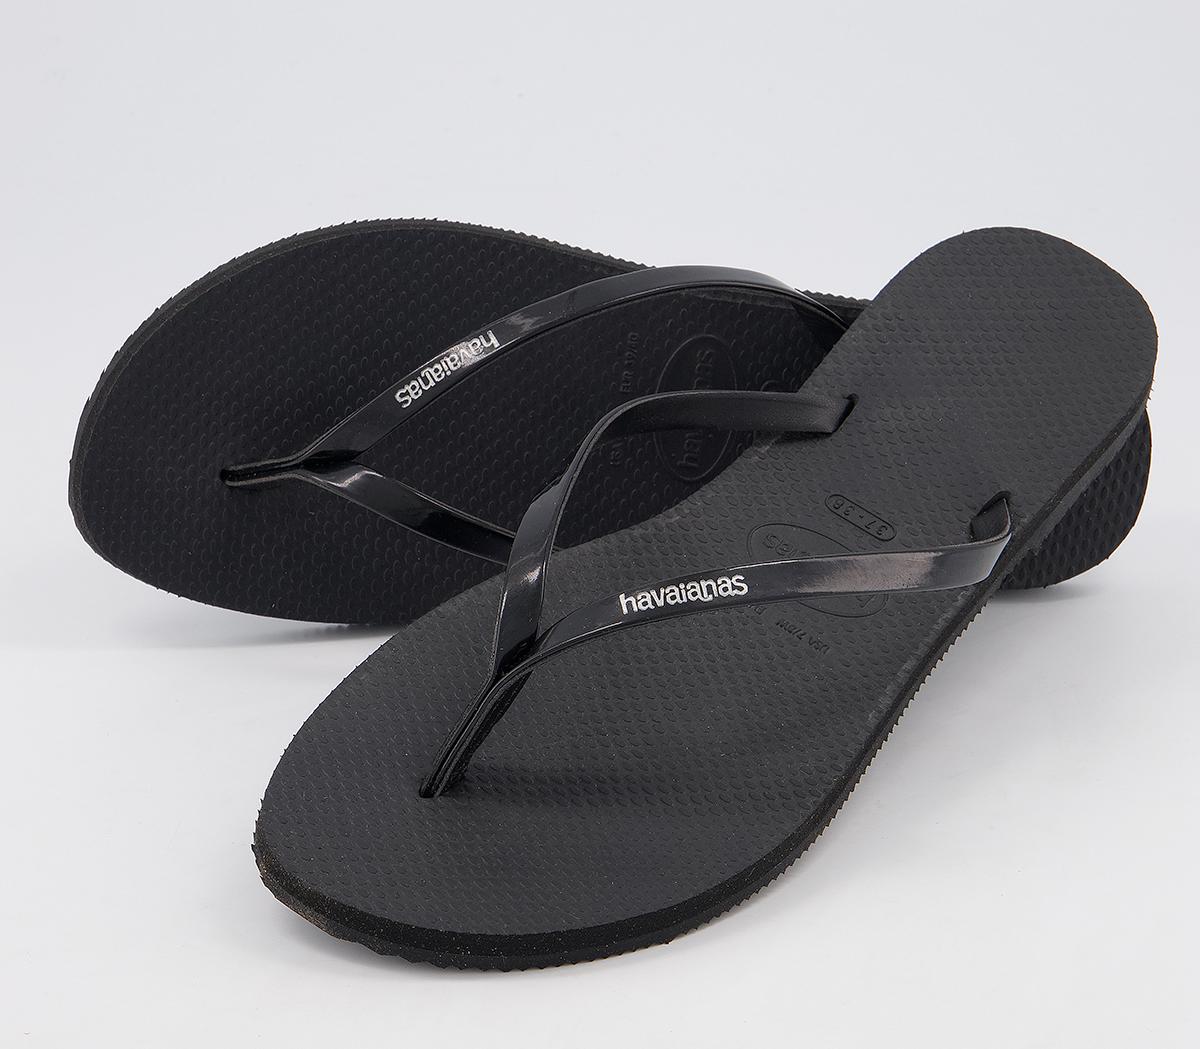 Havaianas You Metallic Flip Flops Black - Women’s Sandals